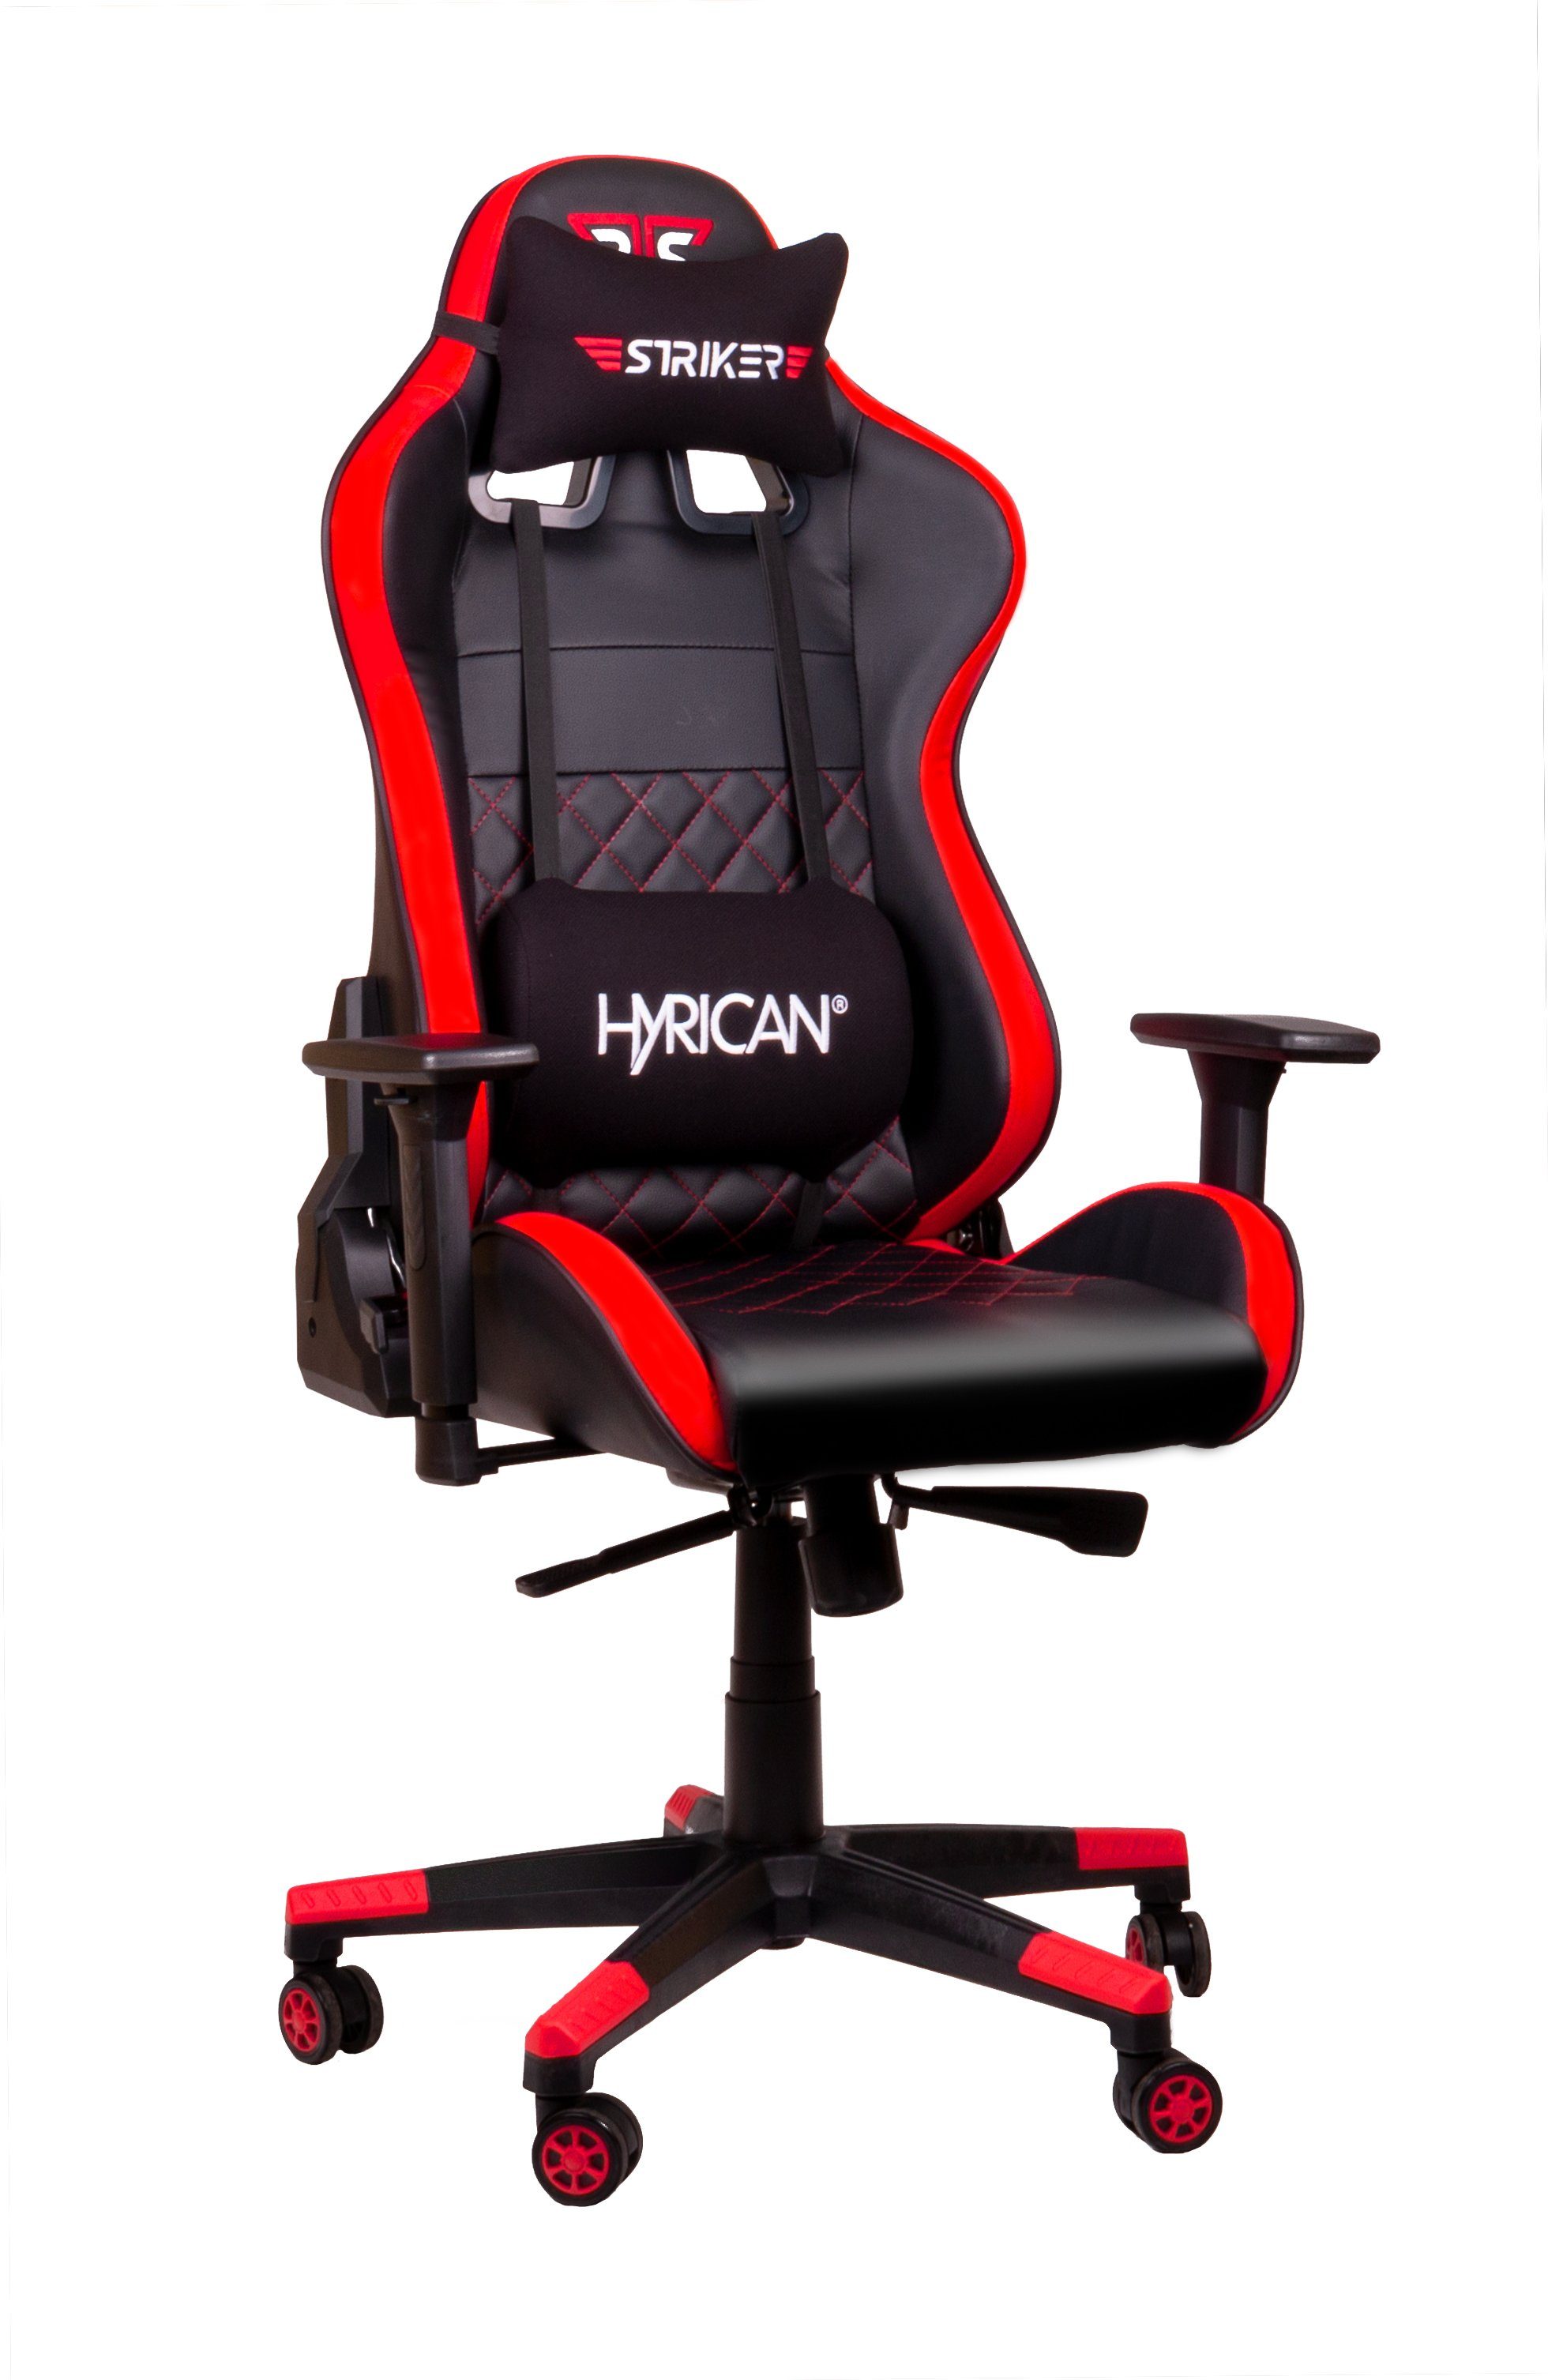 Hyrican Gaming-Stuhl "Striker Code Red ergonomischer Gamingstuhl,Schreibtischstuhl XL"